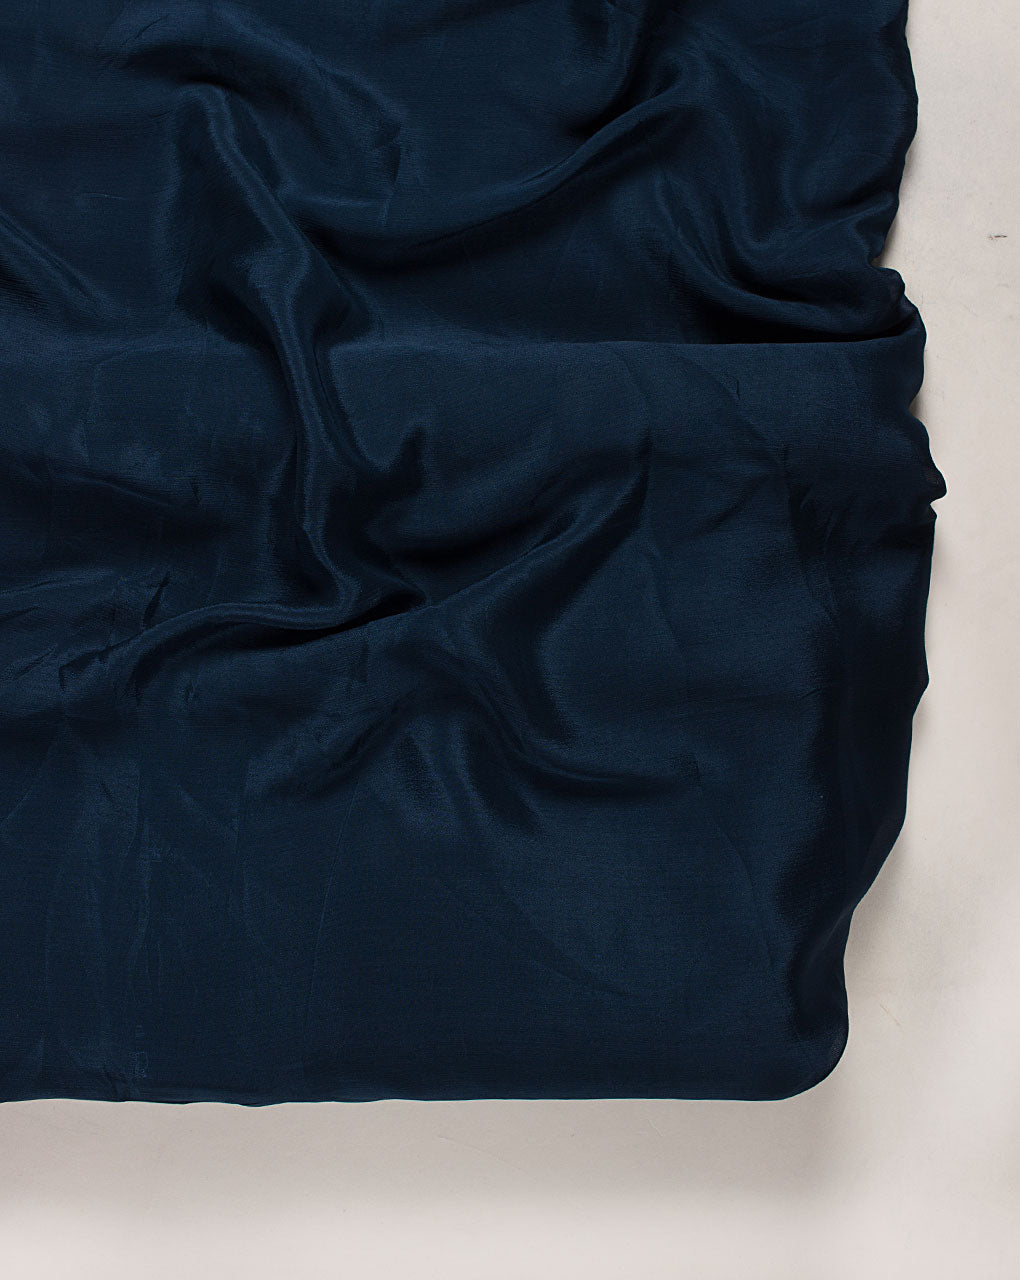 Blue Plain Viscose Chinnon Chiffon Fabric